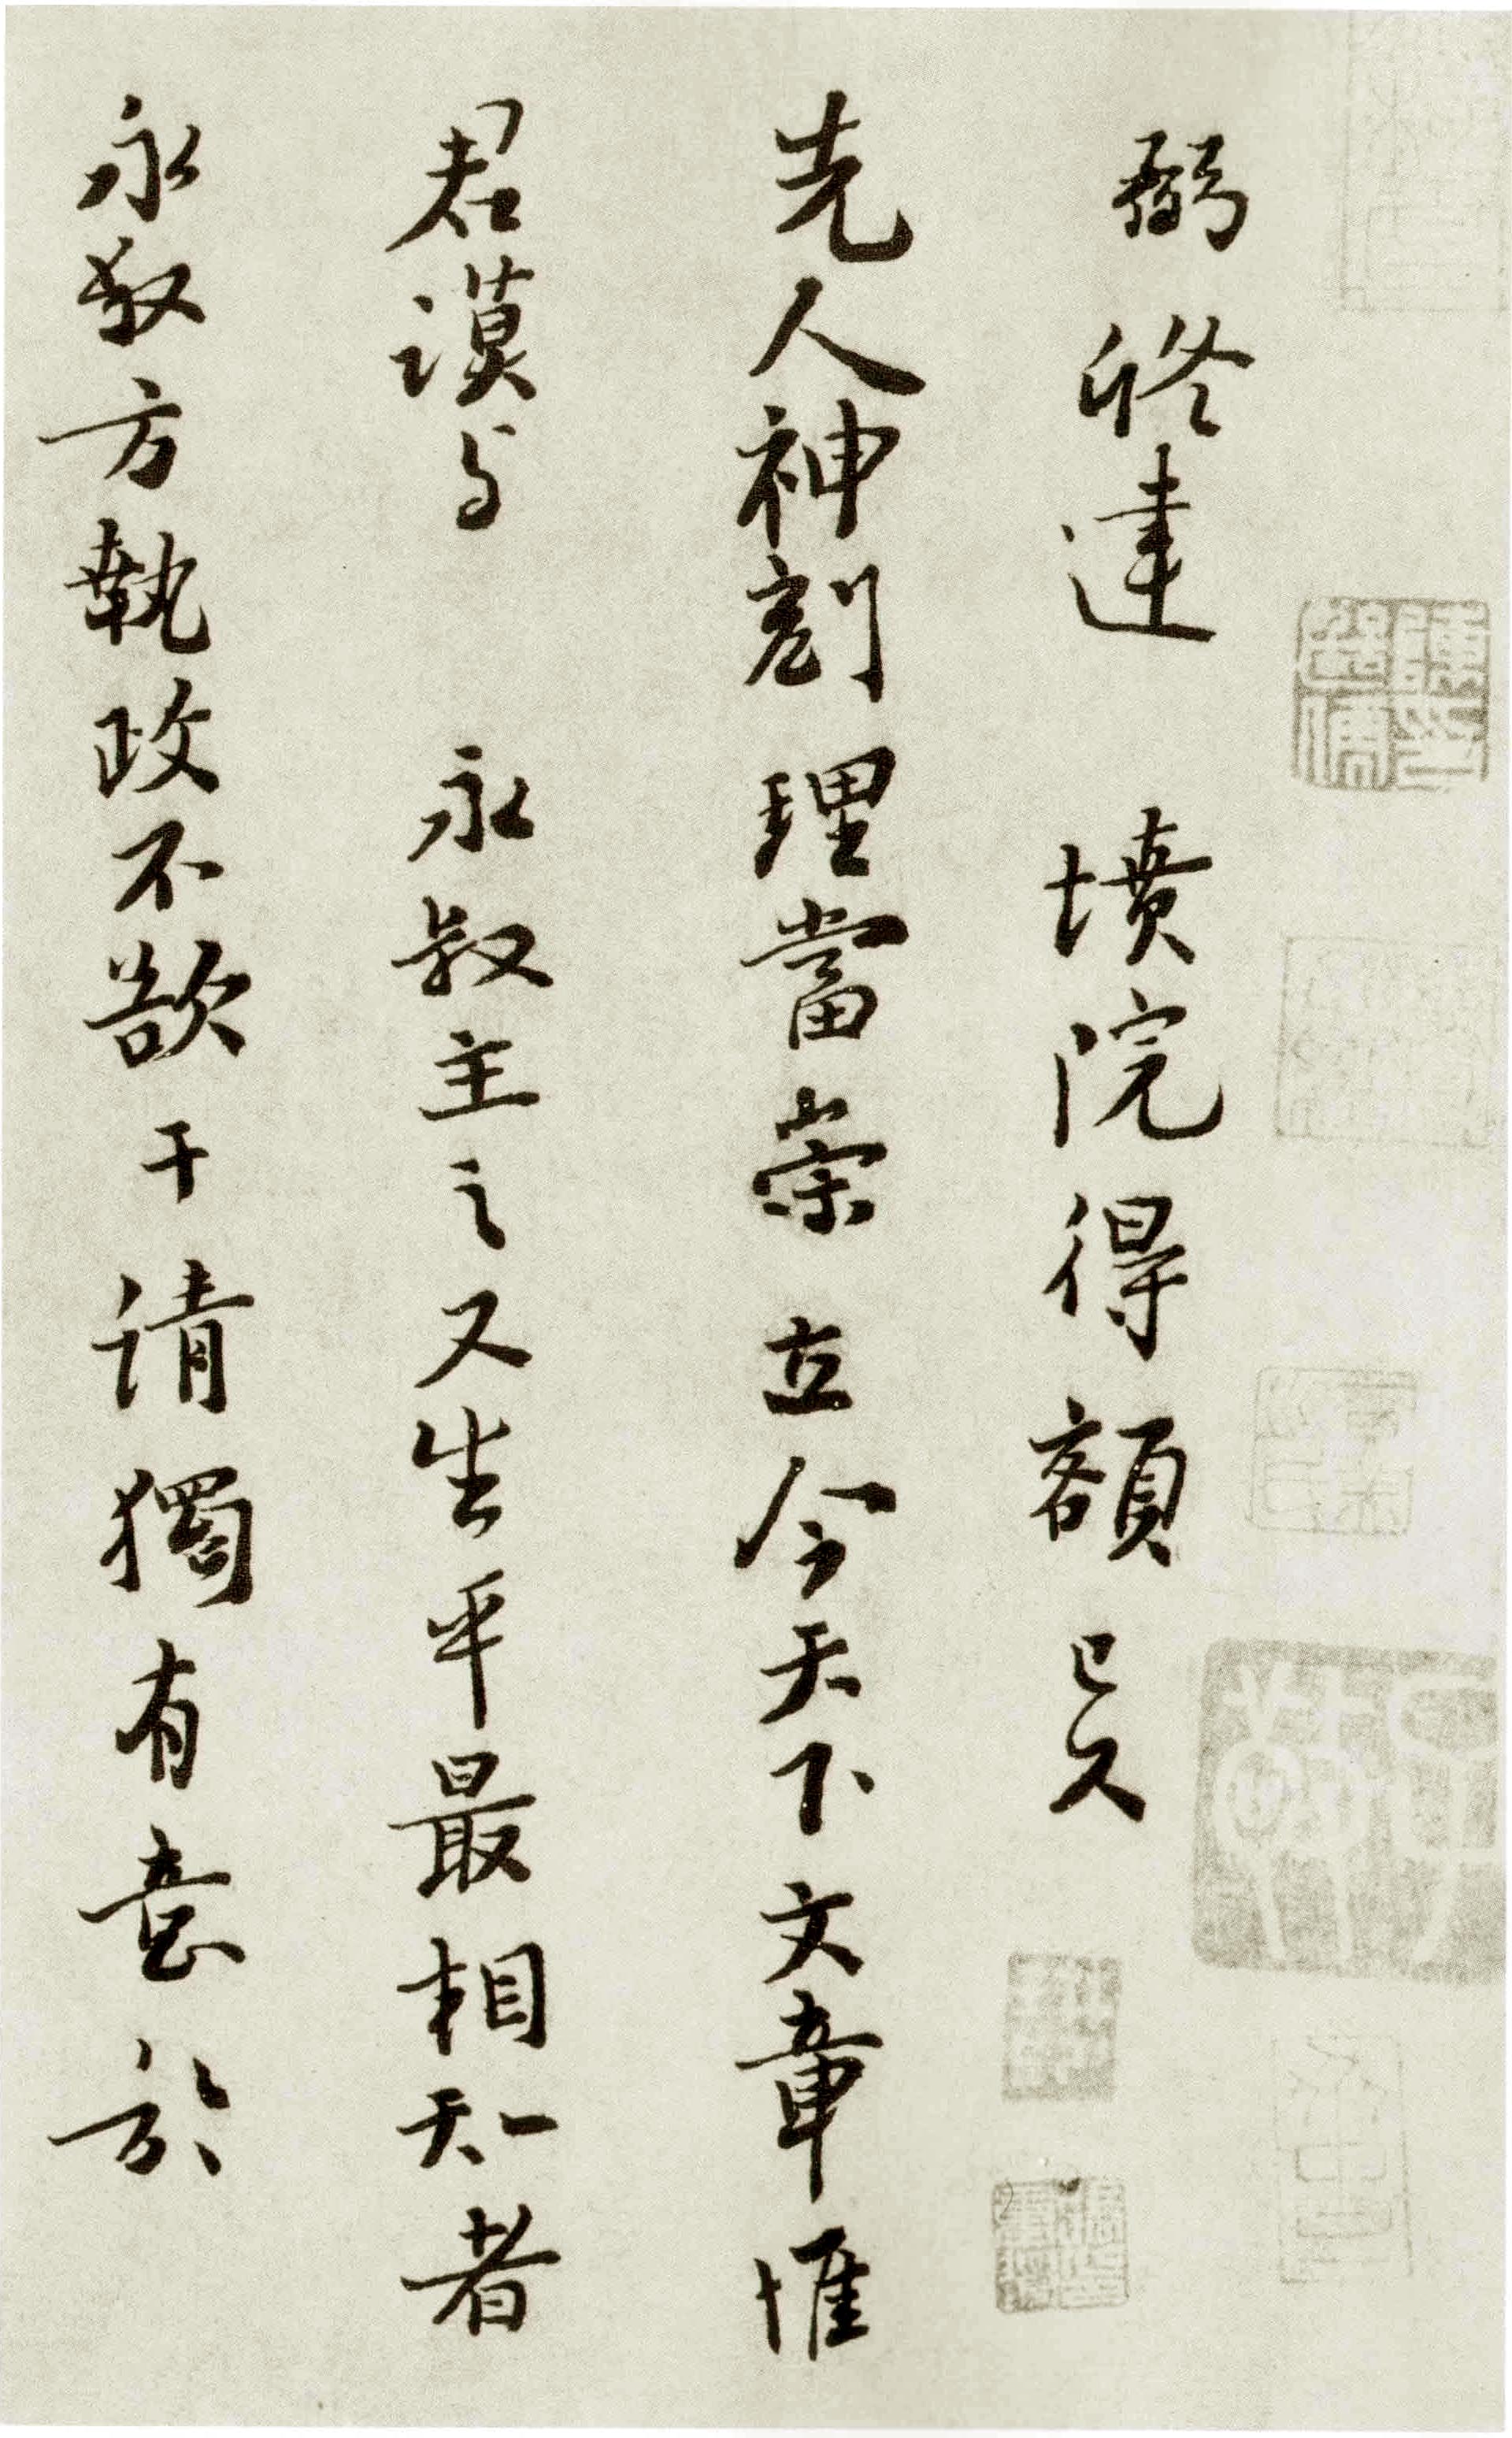 富弼行书《温柑帖》-台北故宫博物院藏(图1)